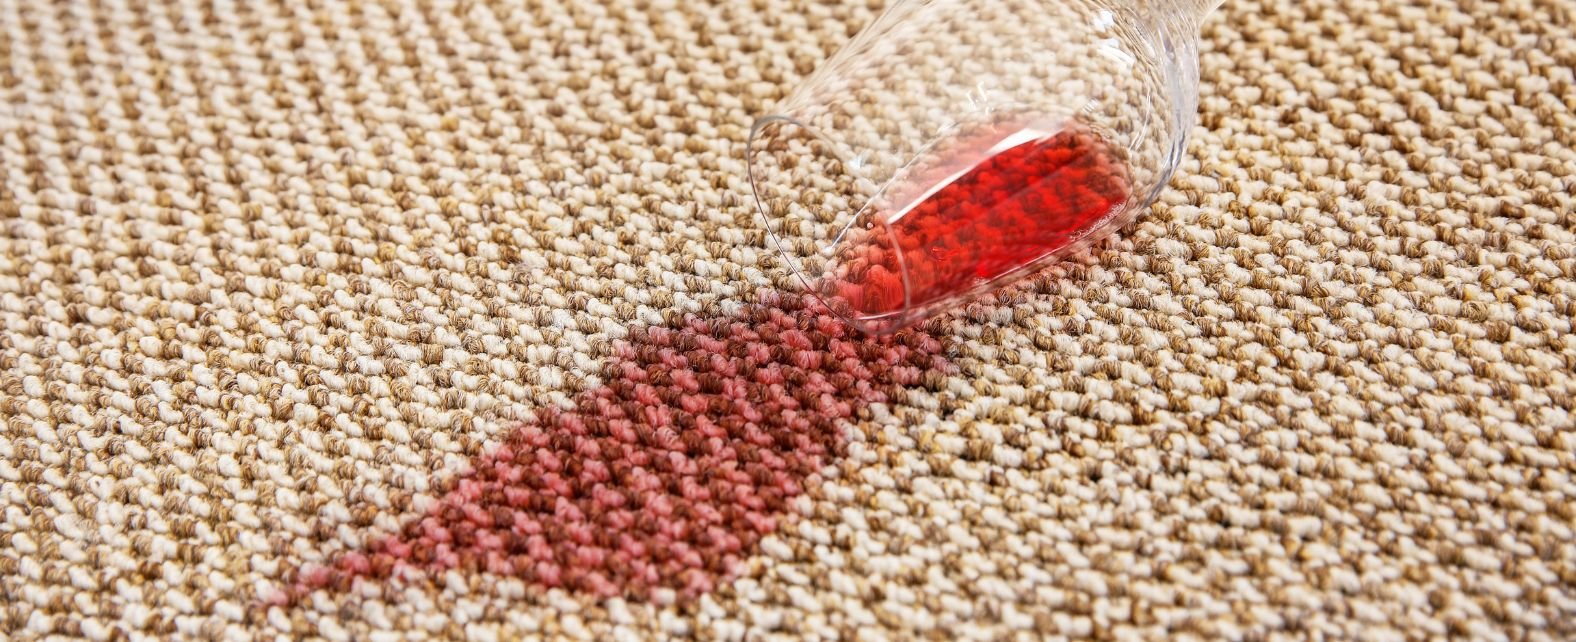 Tache de vin rouge sur un tapis en jute